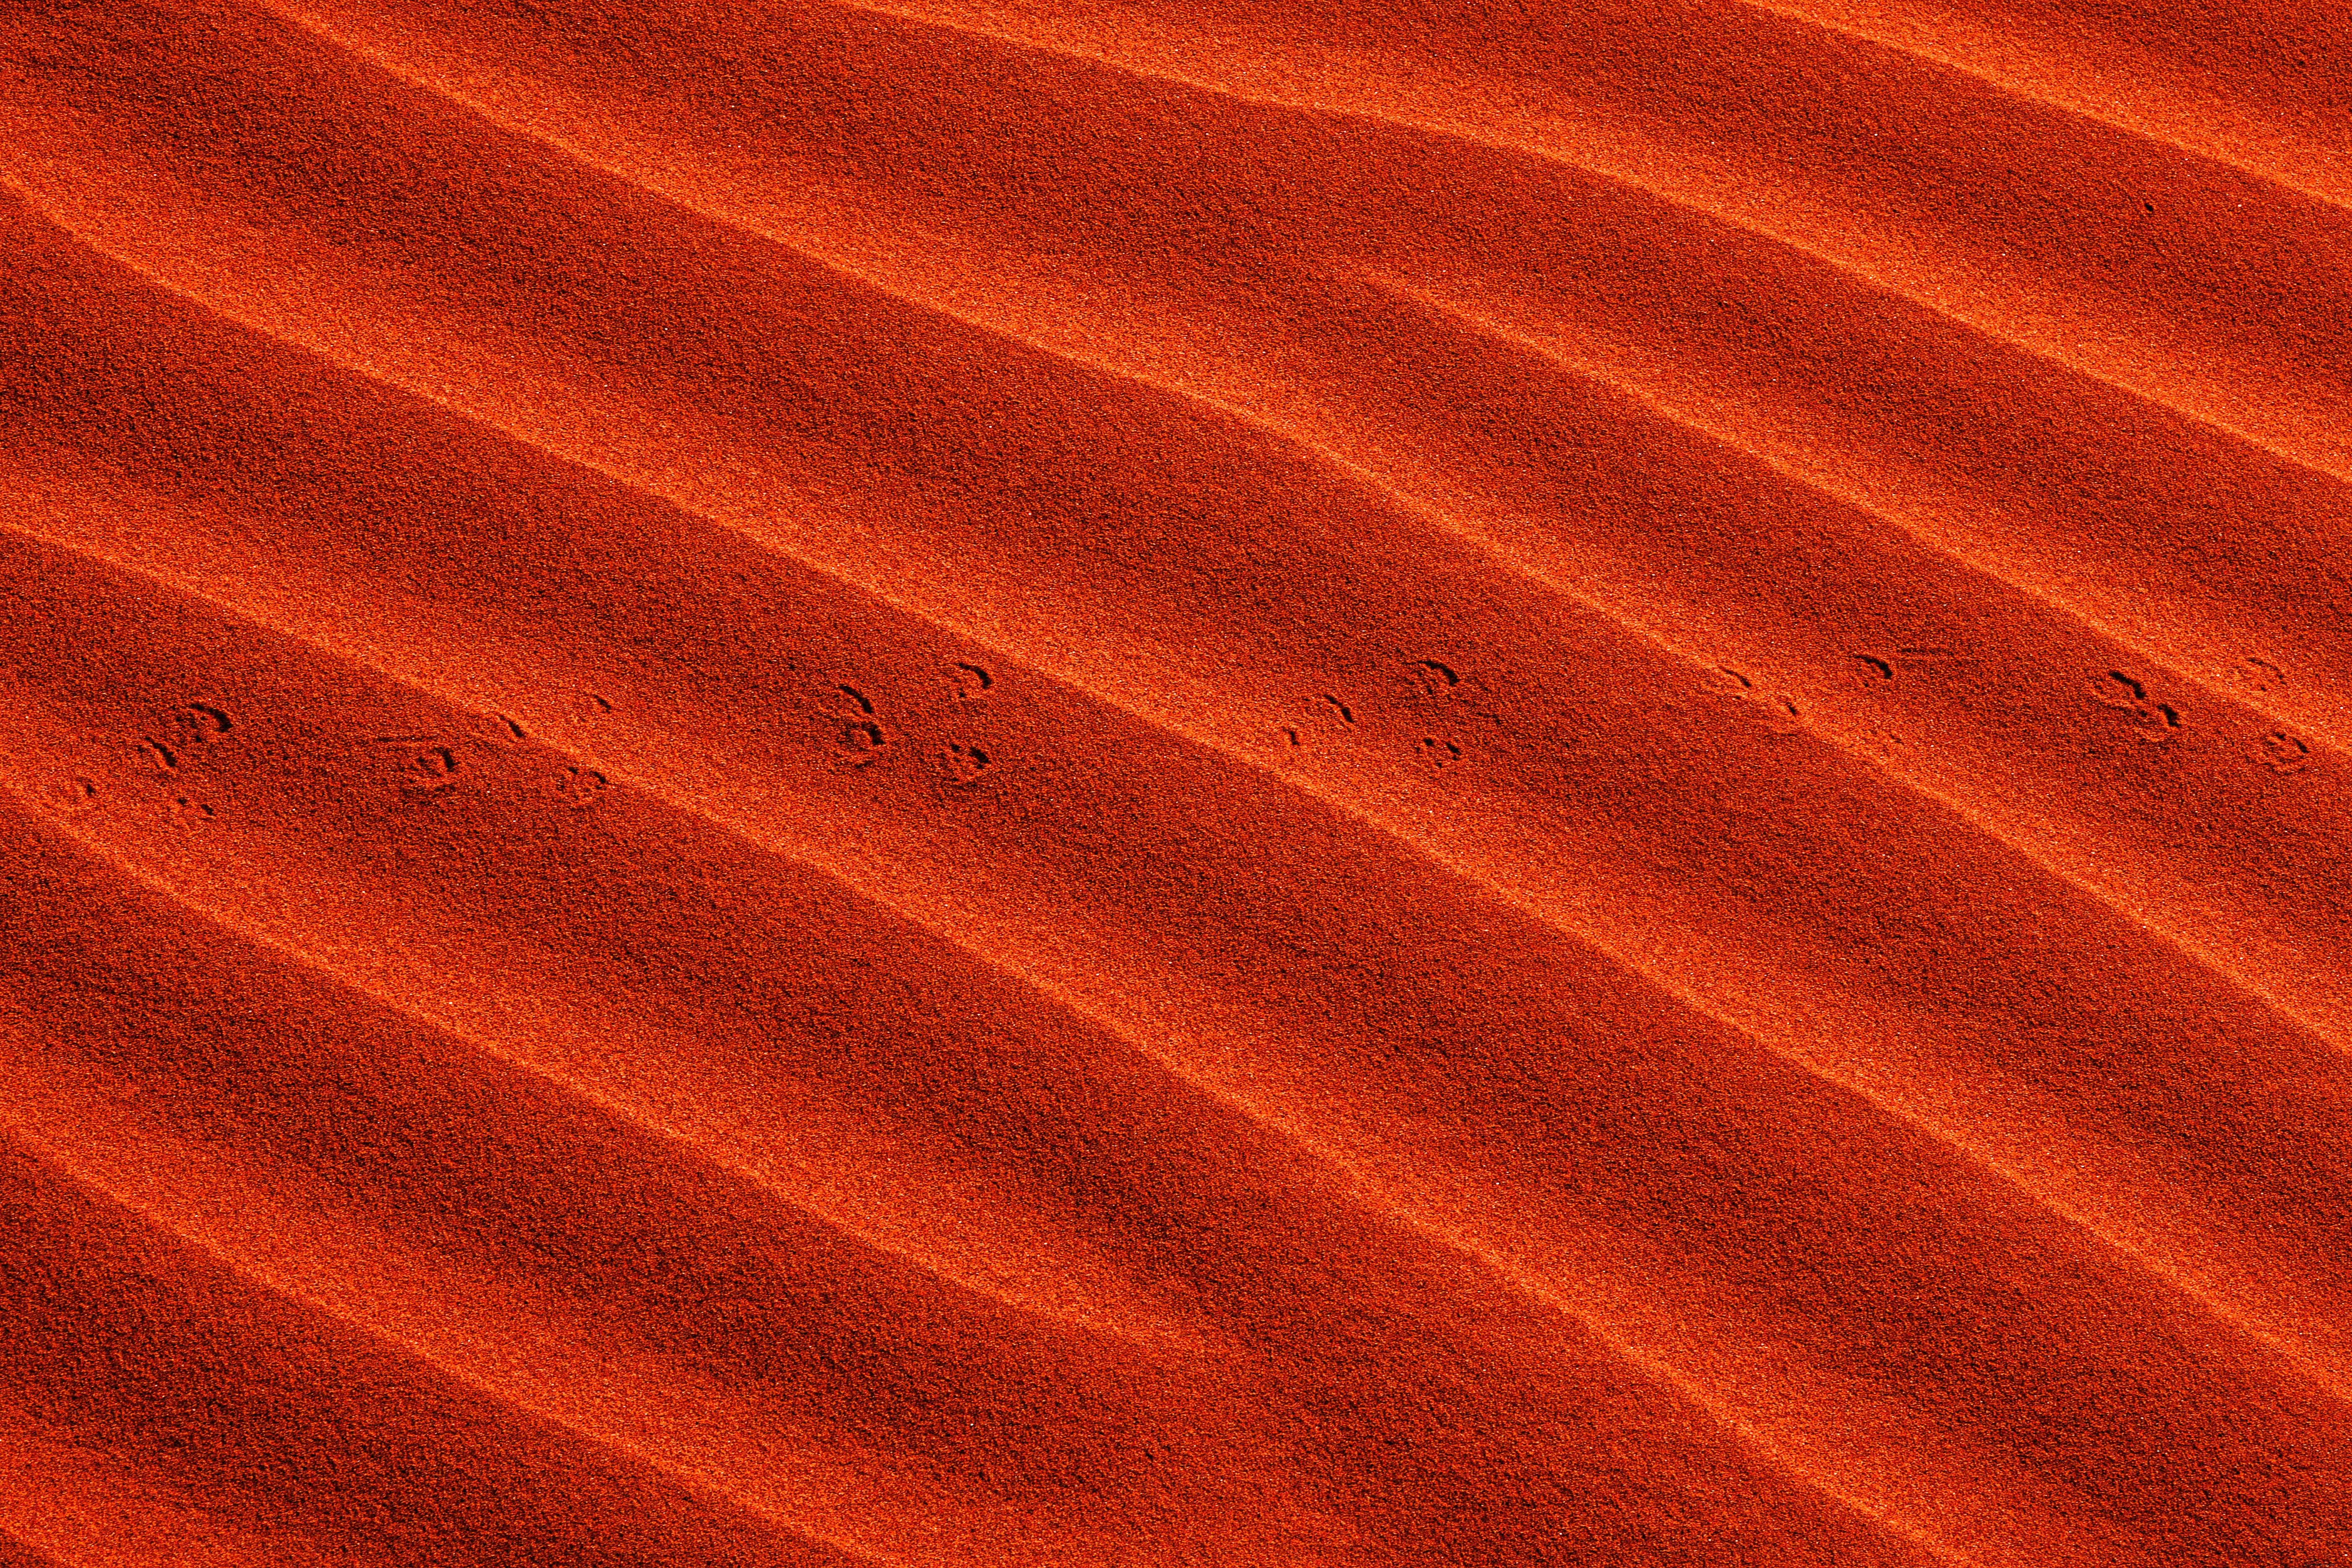 Vagues dans le sable orange vibrant avec de petites empreintes photo 